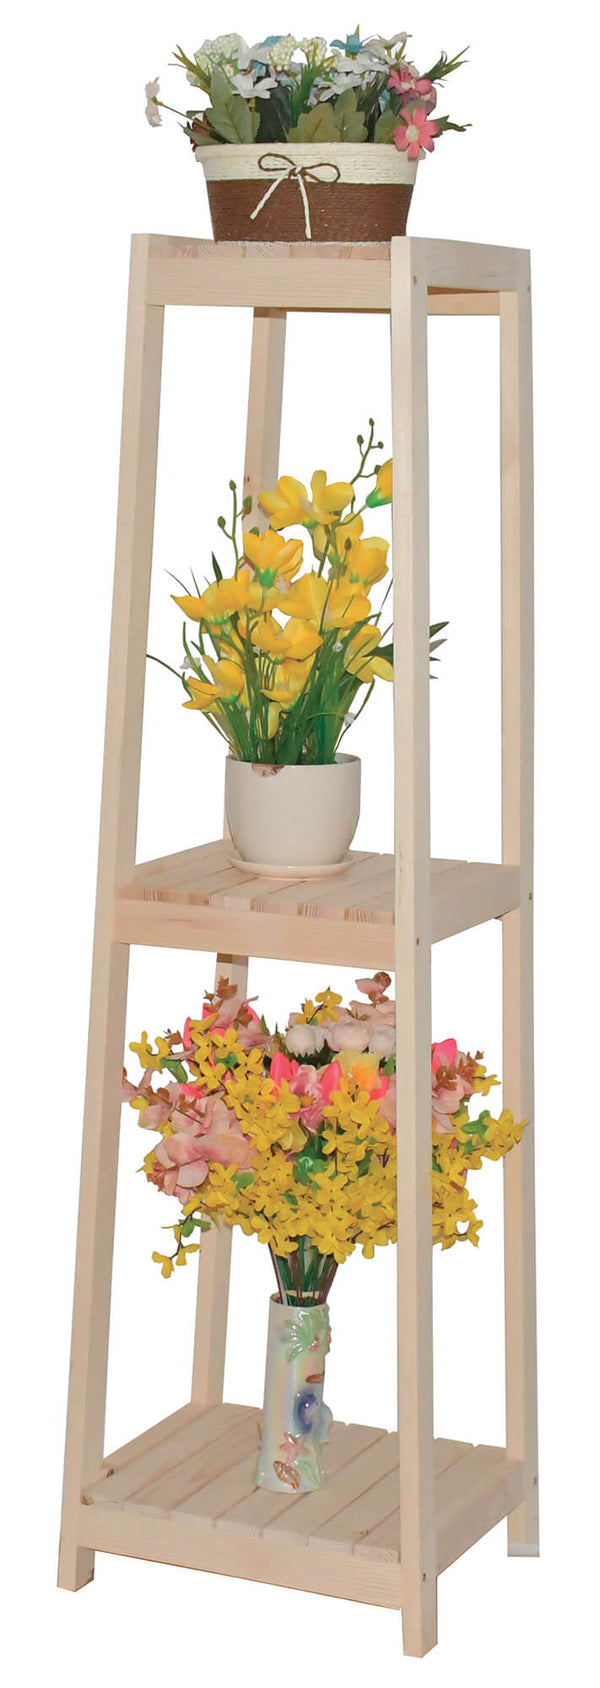 Blumentopfhalter aus Holz 35x30x120 cm acquista